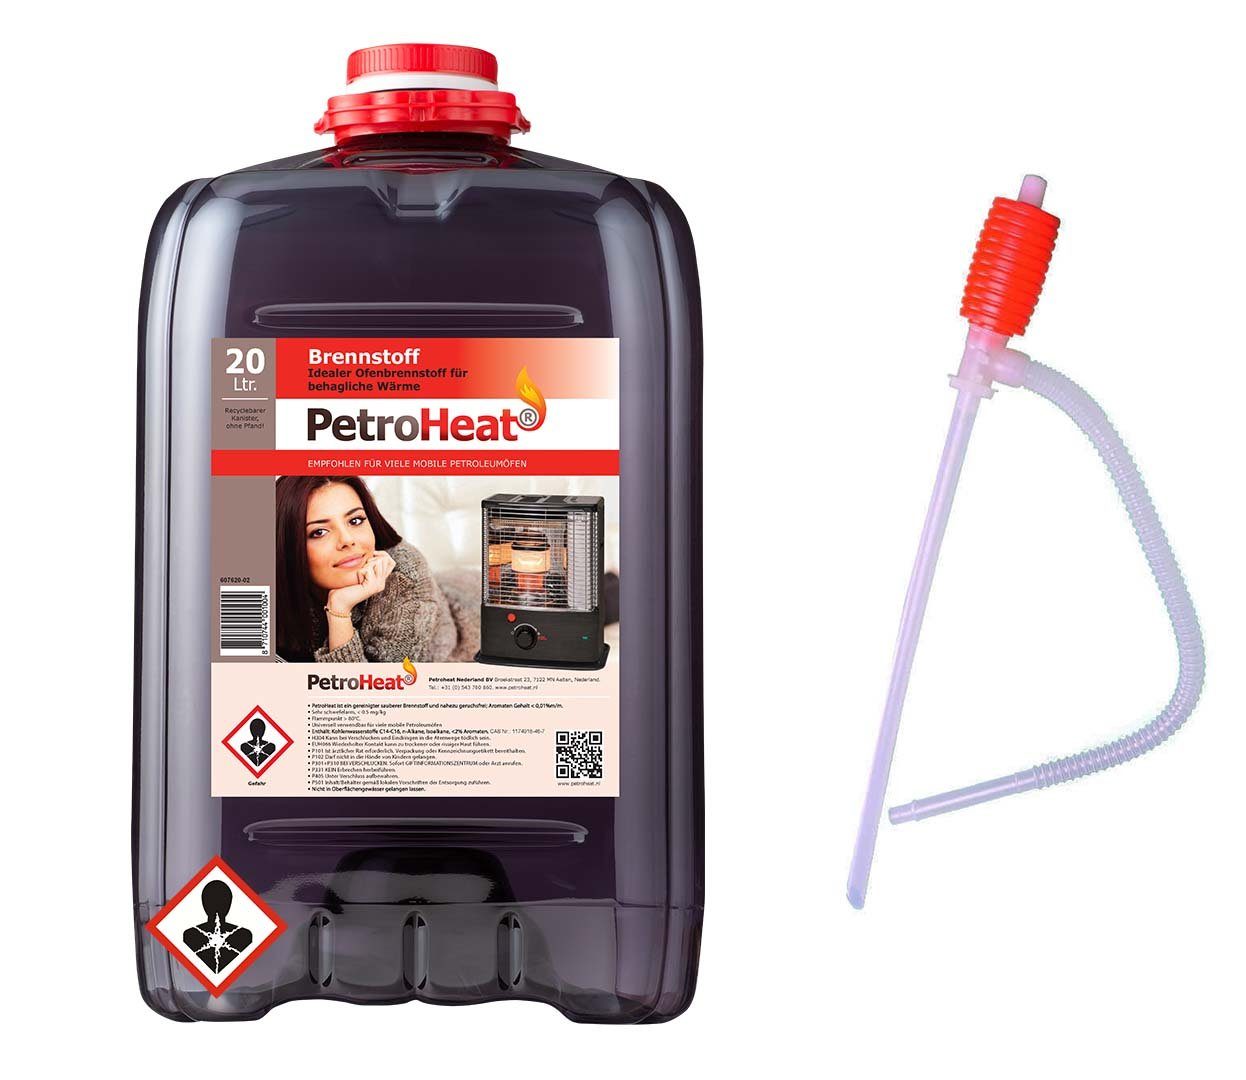 PetroHeat Petroleum 20 Liter Brennstoff gerusarm für Petroleumofen, mit Handpumpe, für mobile Petroleum-Heizung, Petroleumöfen